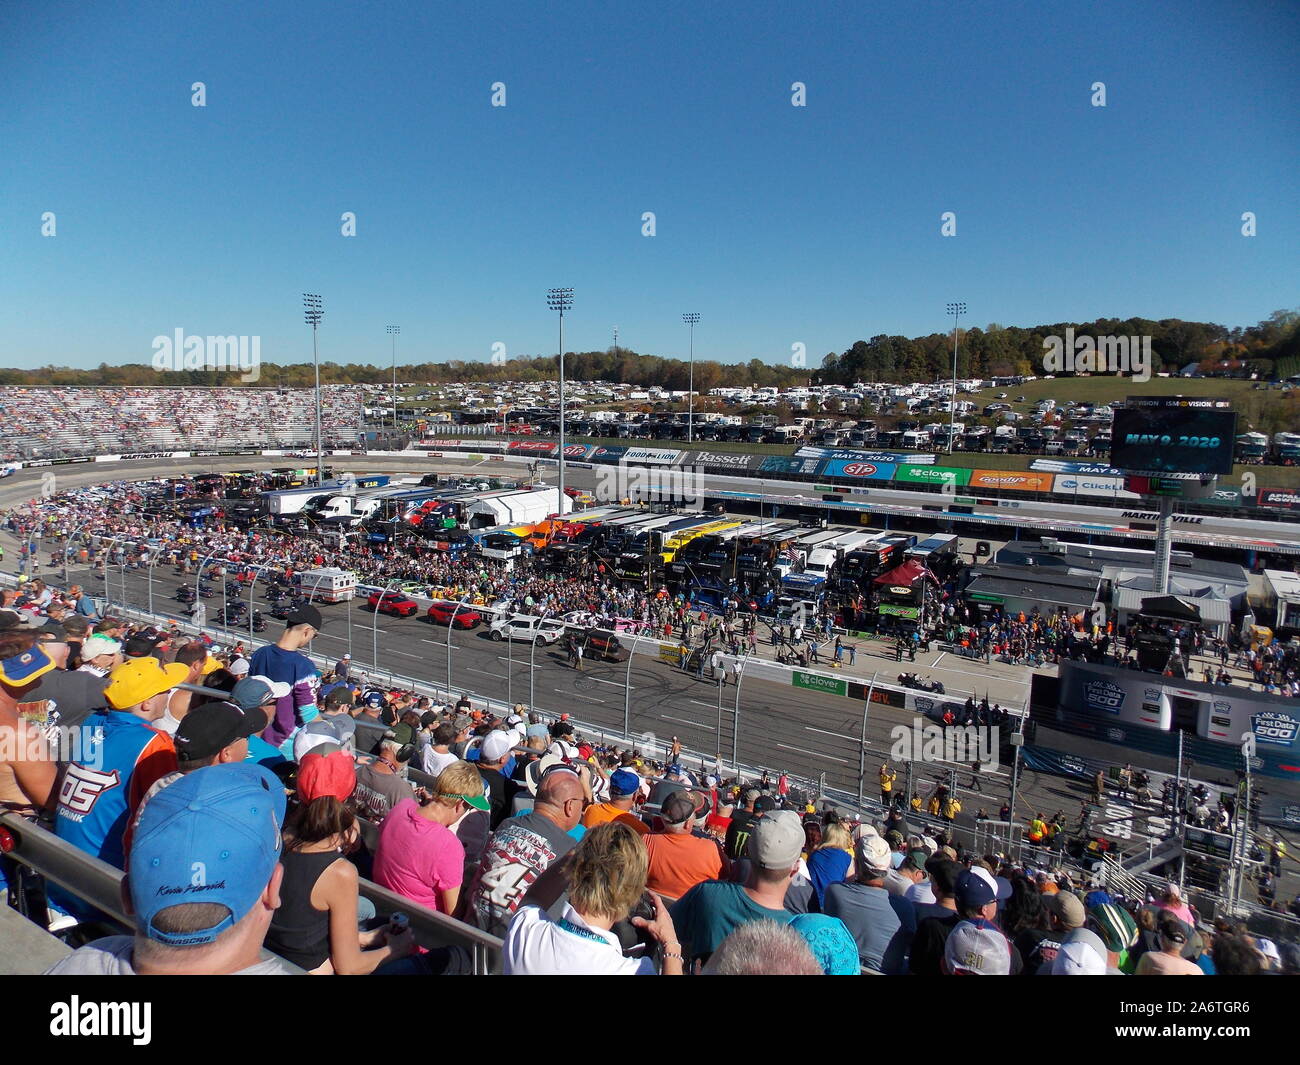 Nascar Stock Car Racing at Martinsville Speedway Virginia Stock Photo